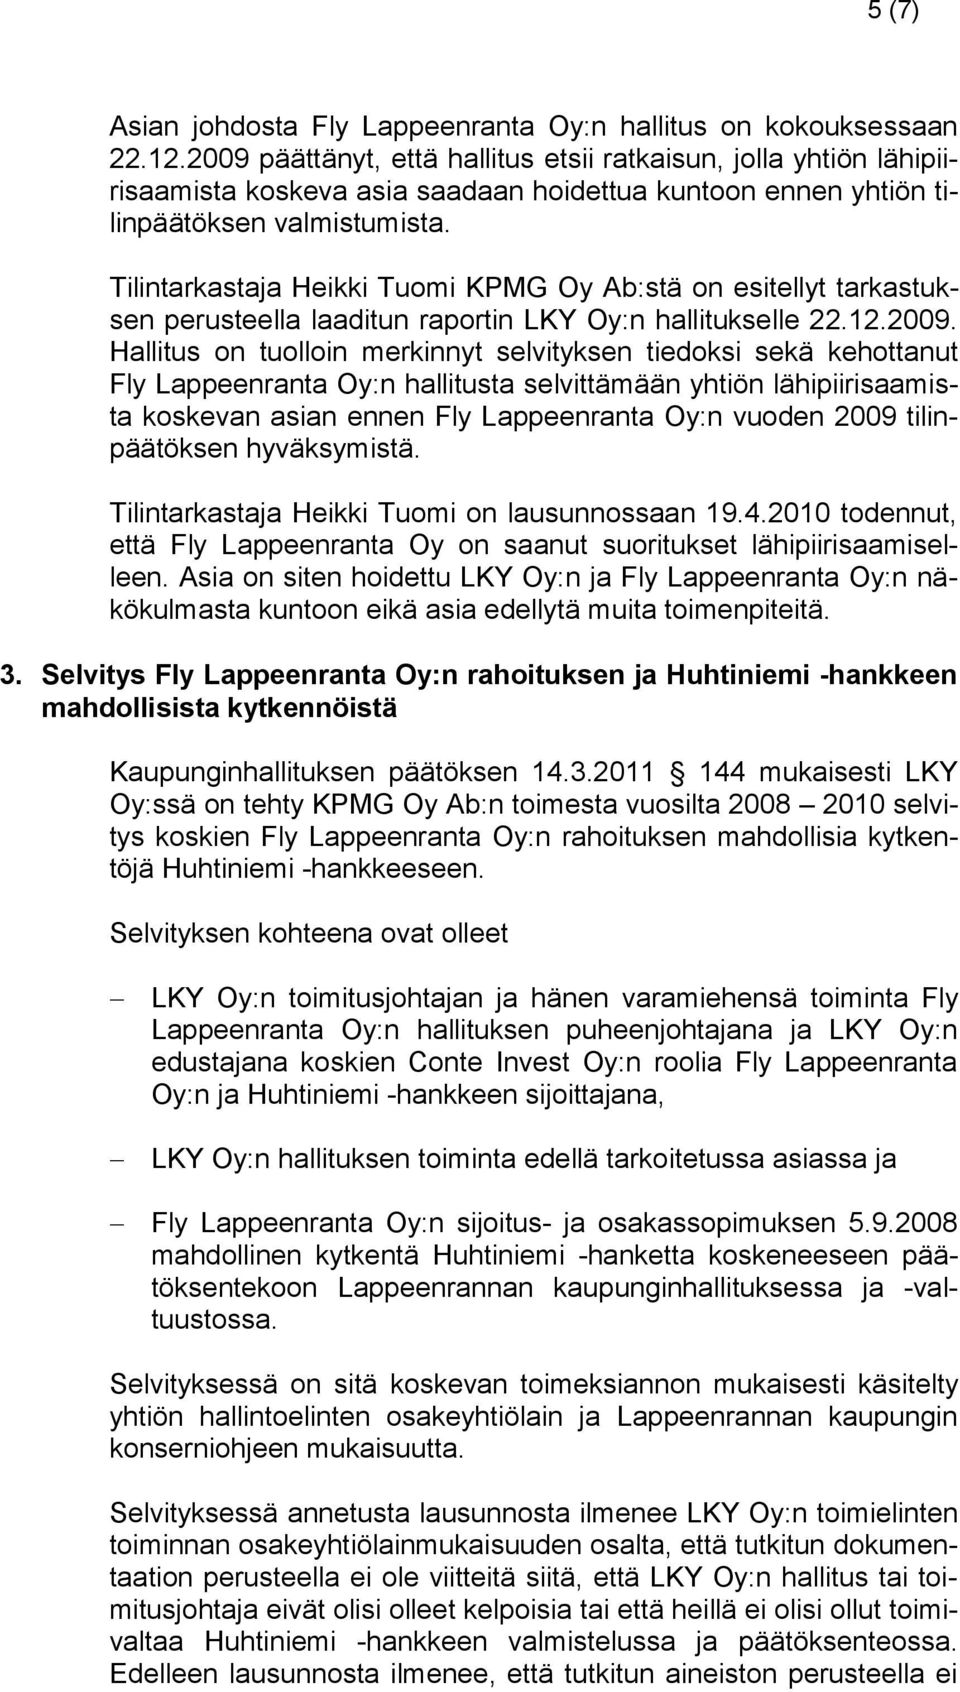 Tilintarkastaja Heikki Tuomi KPMG Oy Ab:stä on esitellyt tarkastuksen perusteella laaditun raportin LKY Oy:n hallitukselle 22.12.2009.